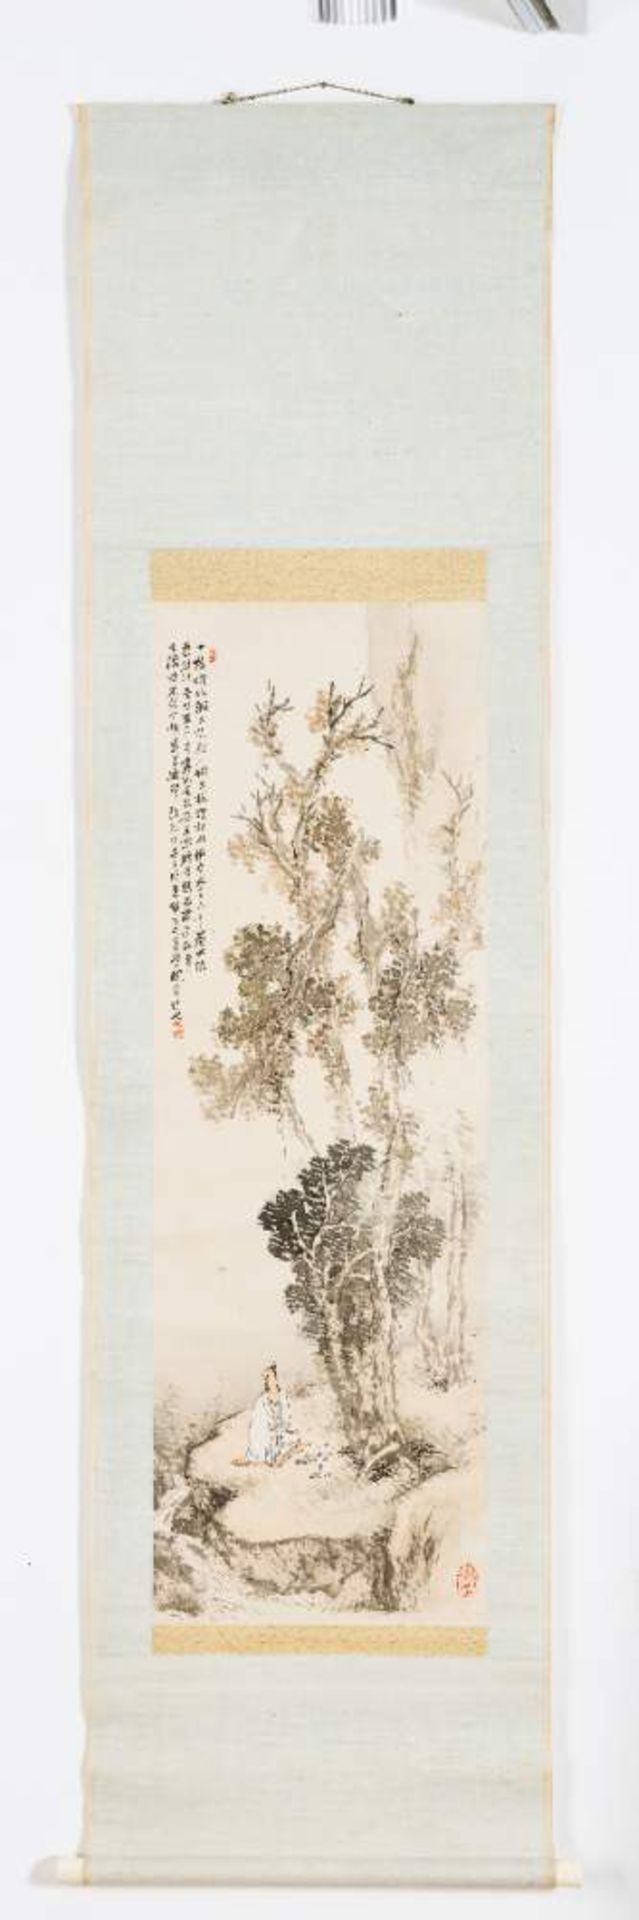 HASHIMOTO KANSETSU (1883-1945): GENIESSER AM BERGBACHTusche und Farben auf Papier. Japan, 1. H. - Bild 2 aus 4